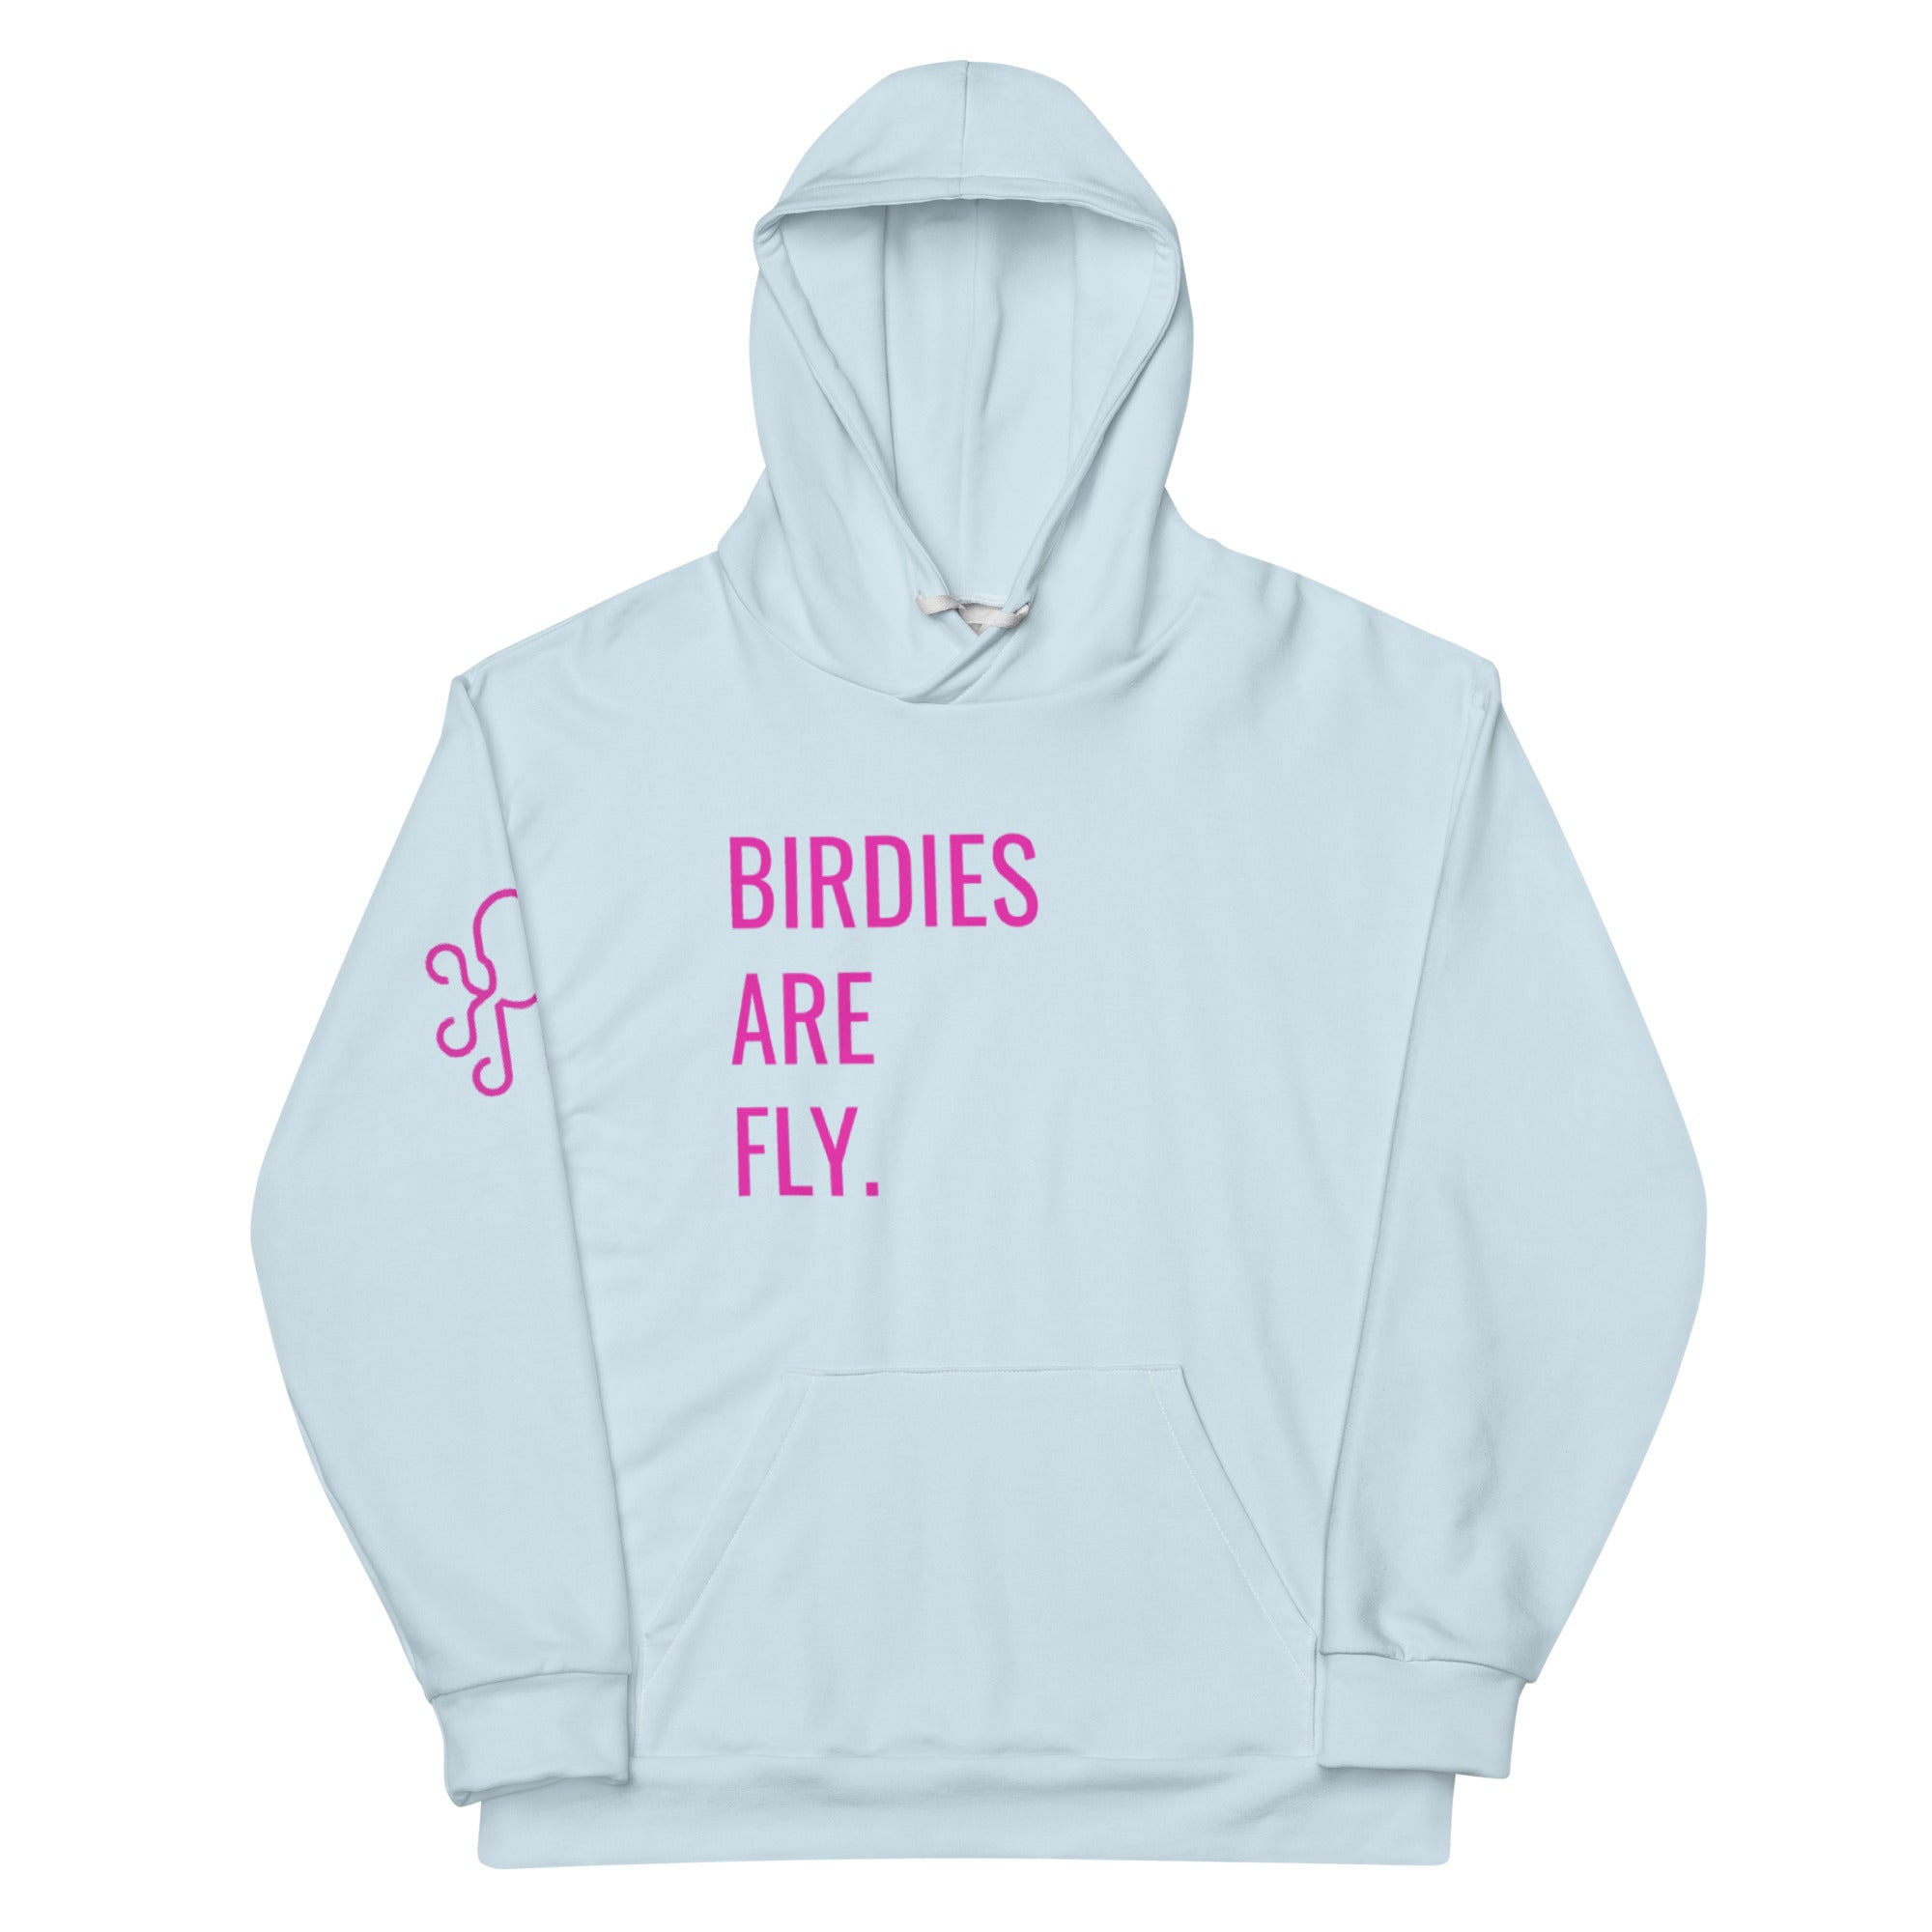 BIRDIES ARE FLY Hoodie - Bay Blue - Kraken Golf